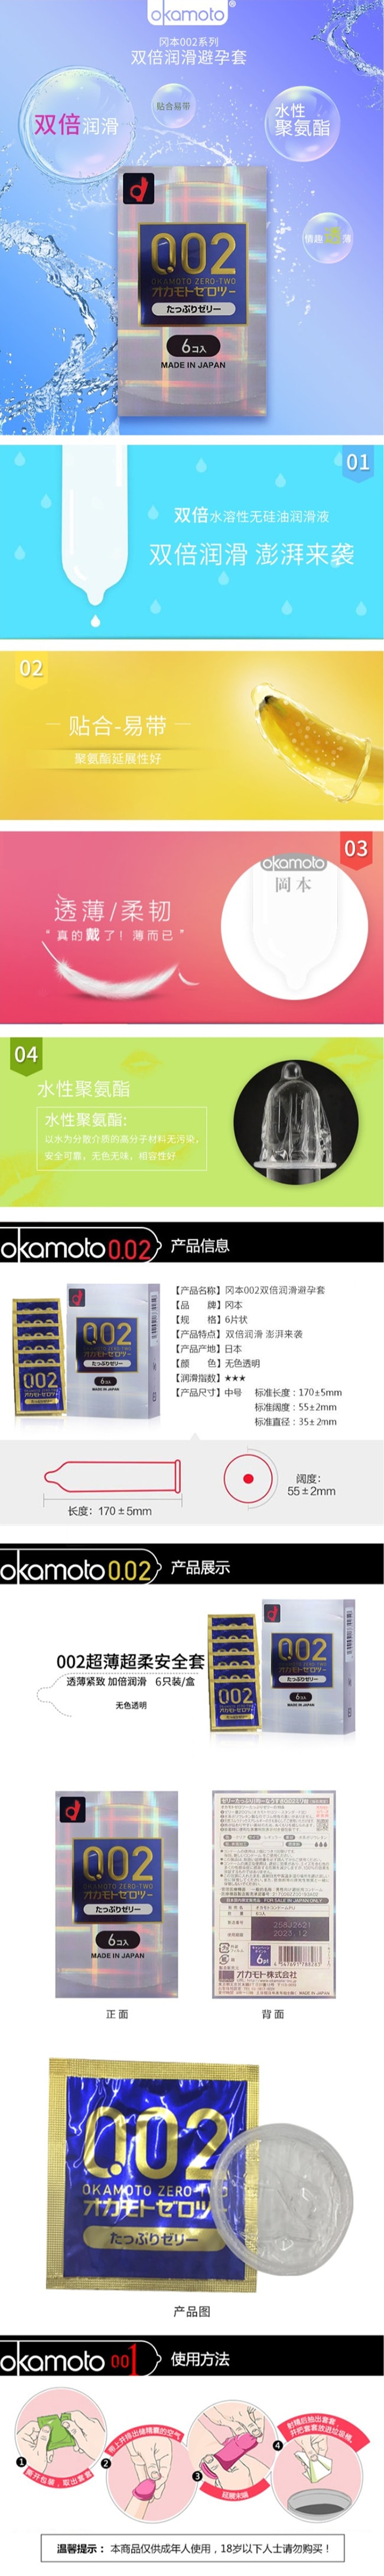 【日本直郵】OKAMOTO岡本 002雙倍潤滑版保險套保險套 6隻裝